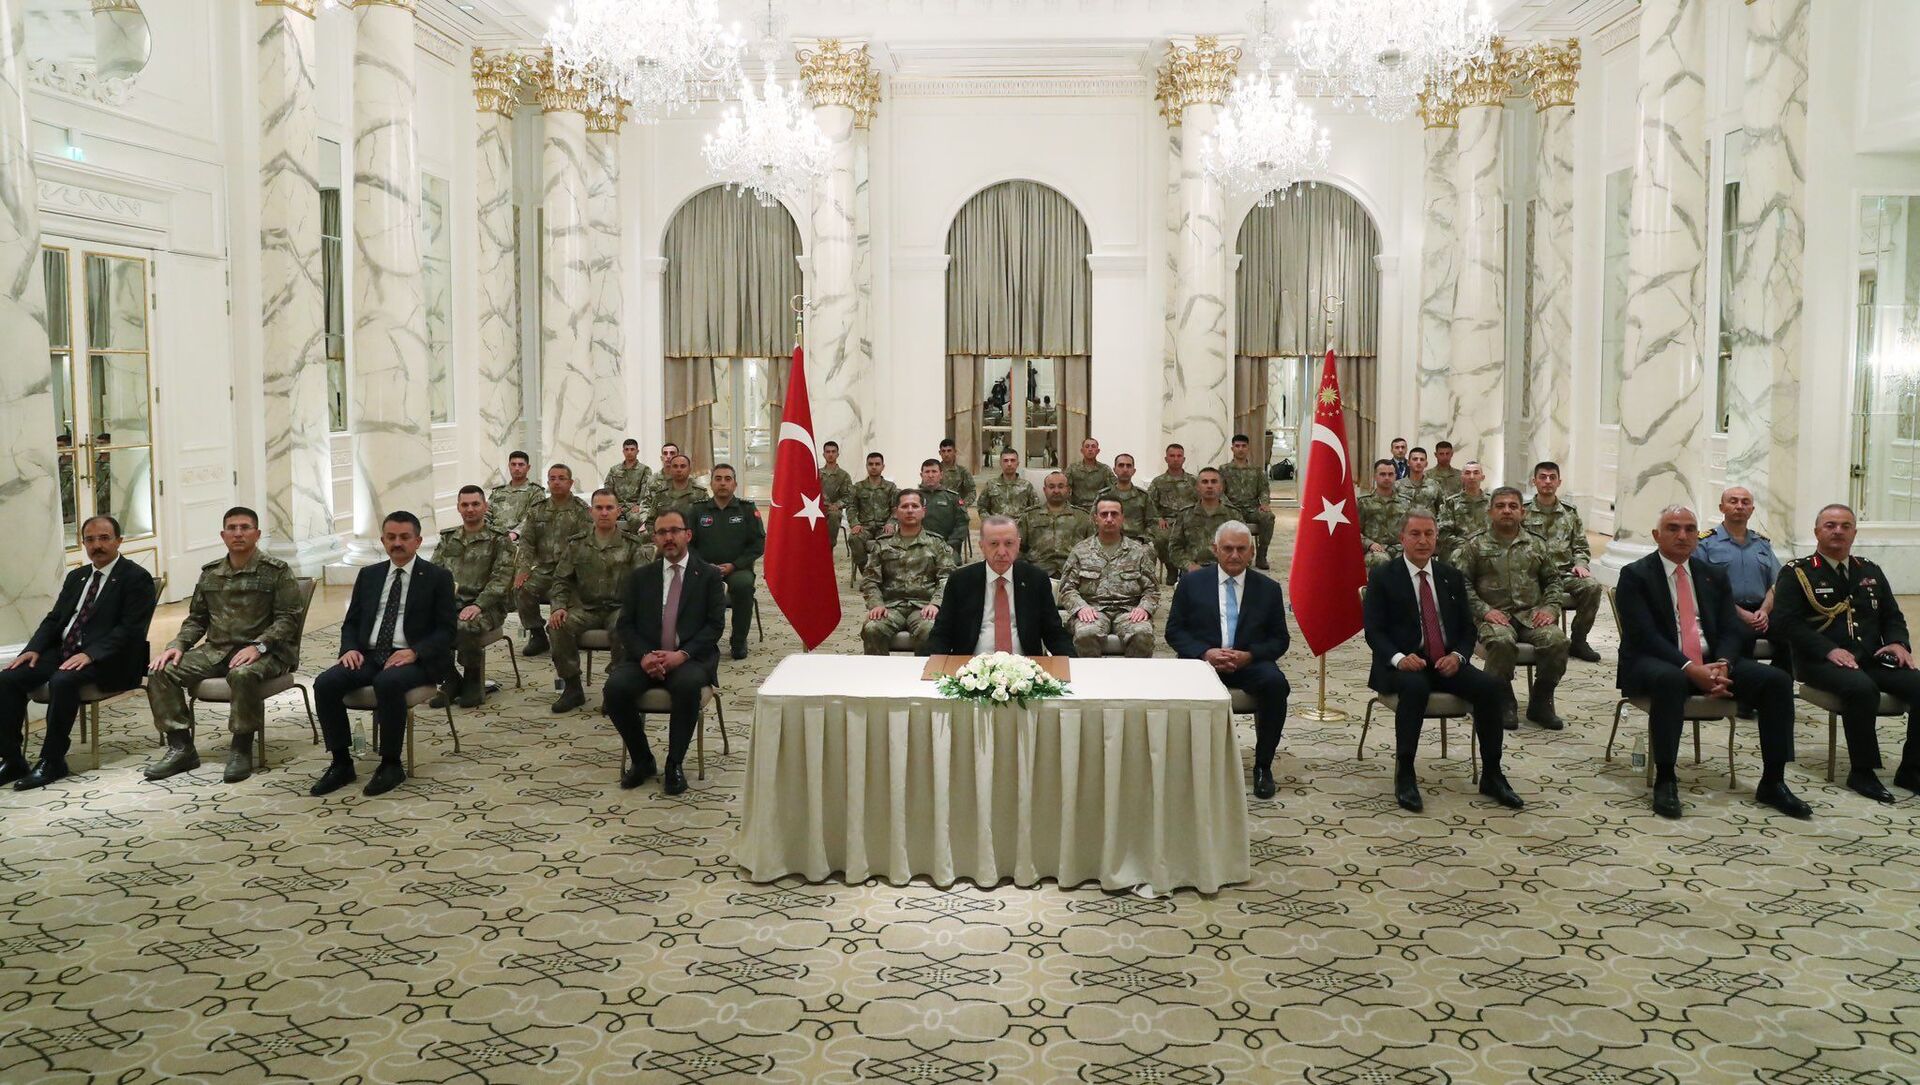 Встреча президента Турции Эрдогана с турецкими военными в Агдаме - Sputnik Азербайджан, 1920, 16.06.2021